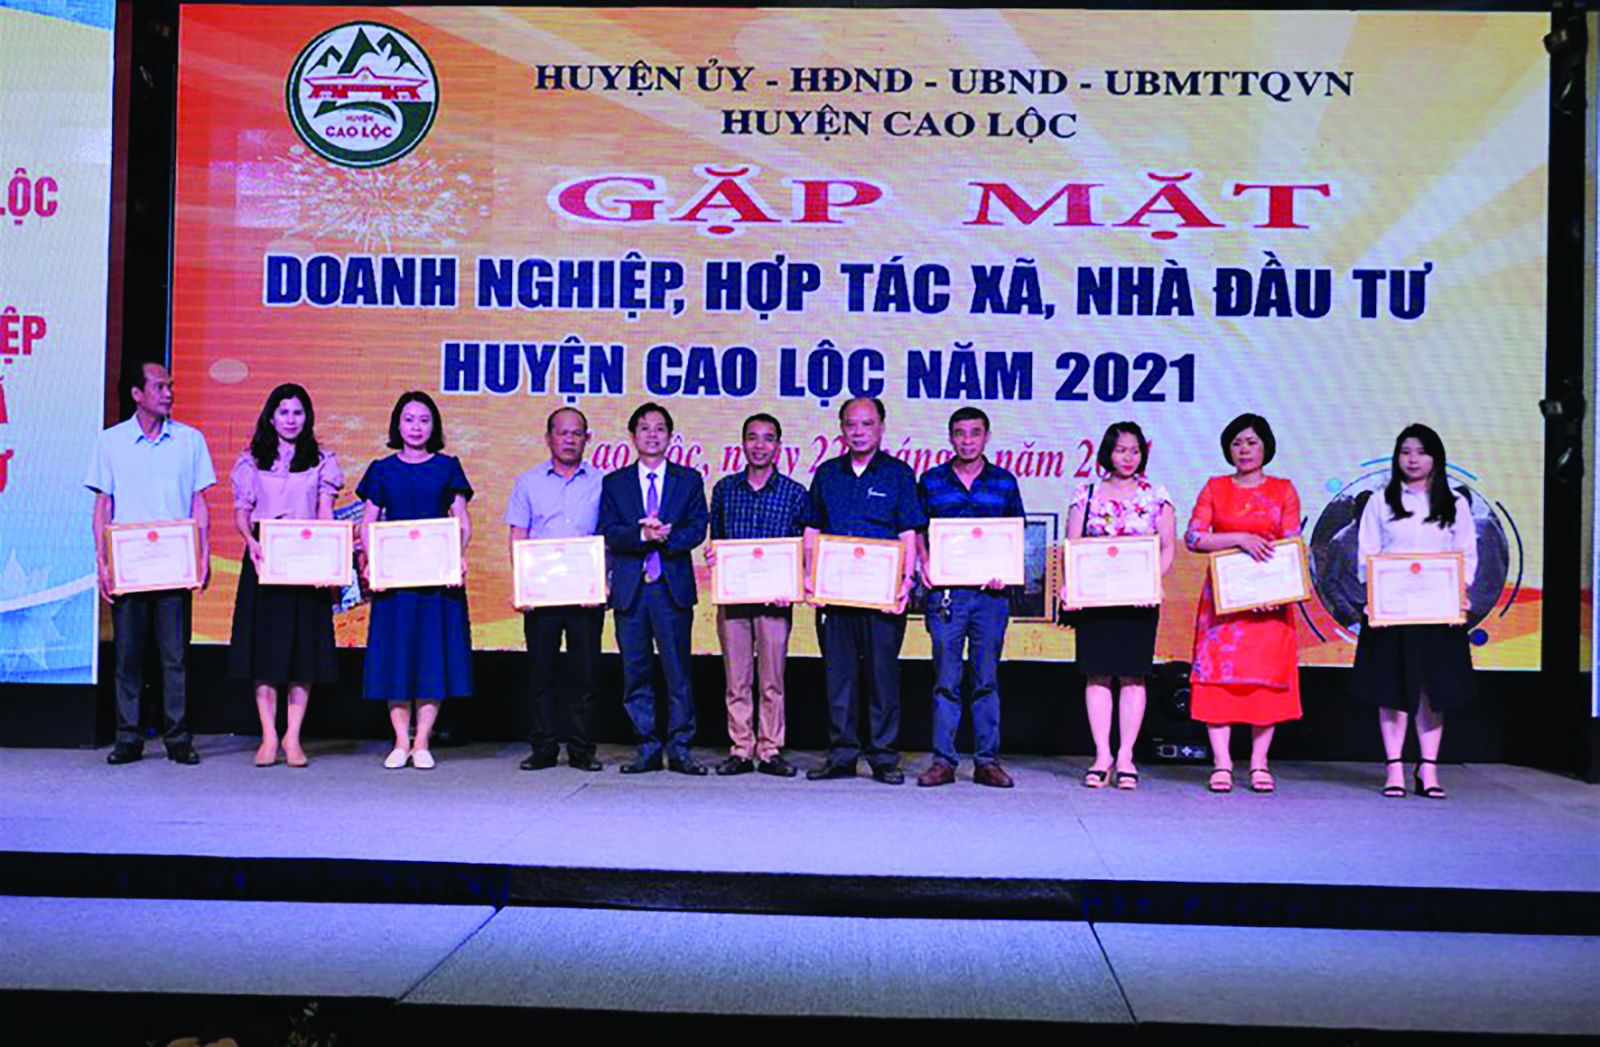  Chủ tịch UBND huyện Cao Lộc tặng giấy khen cho 10 tập thể doanh nghiệp HTX nhà đầu tư có thành tích xuất sắc, đóng góp vào sự phát triển kinh tế - xã hội của địa phương